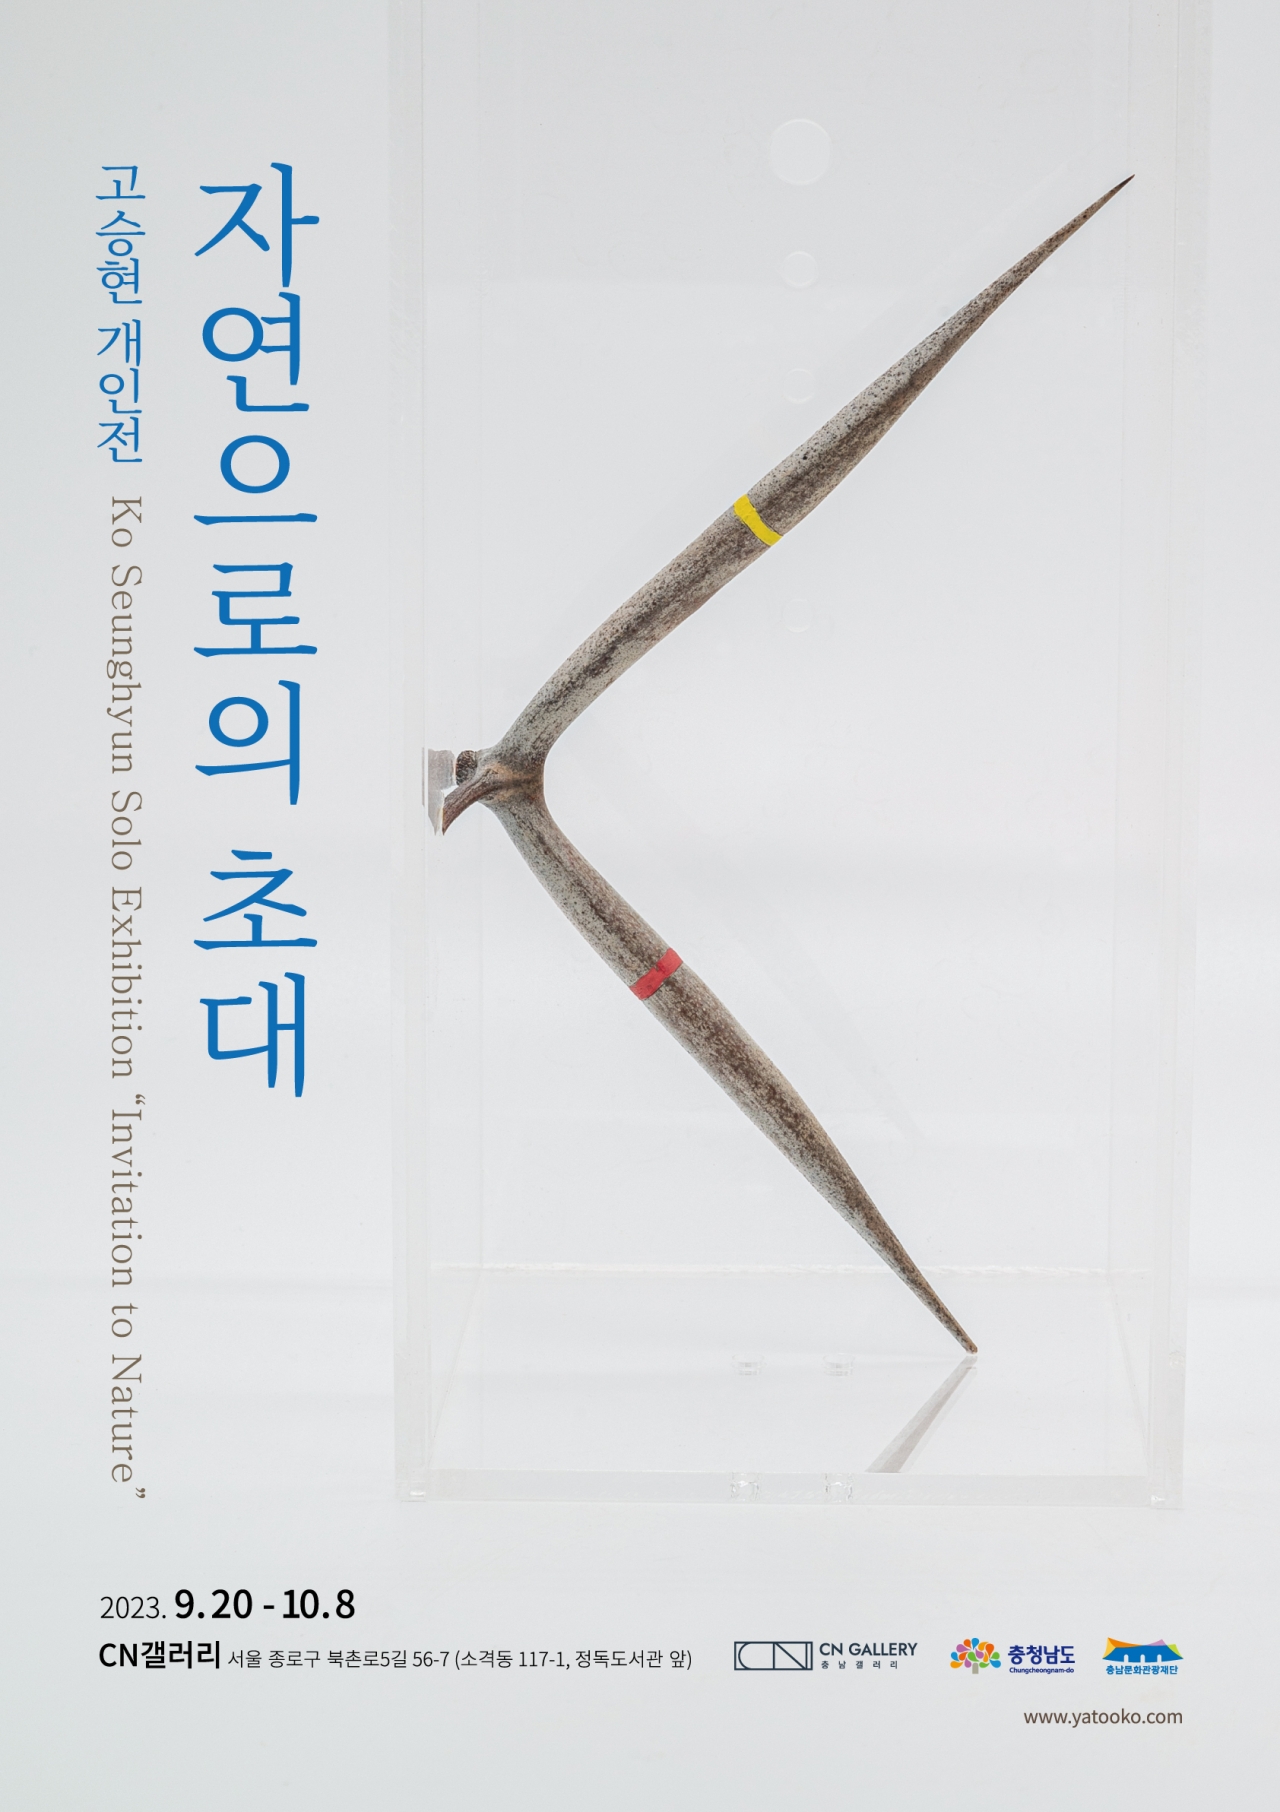 고승현 작가의 자연으로의 초대 포스터 / 충남문화관광재단